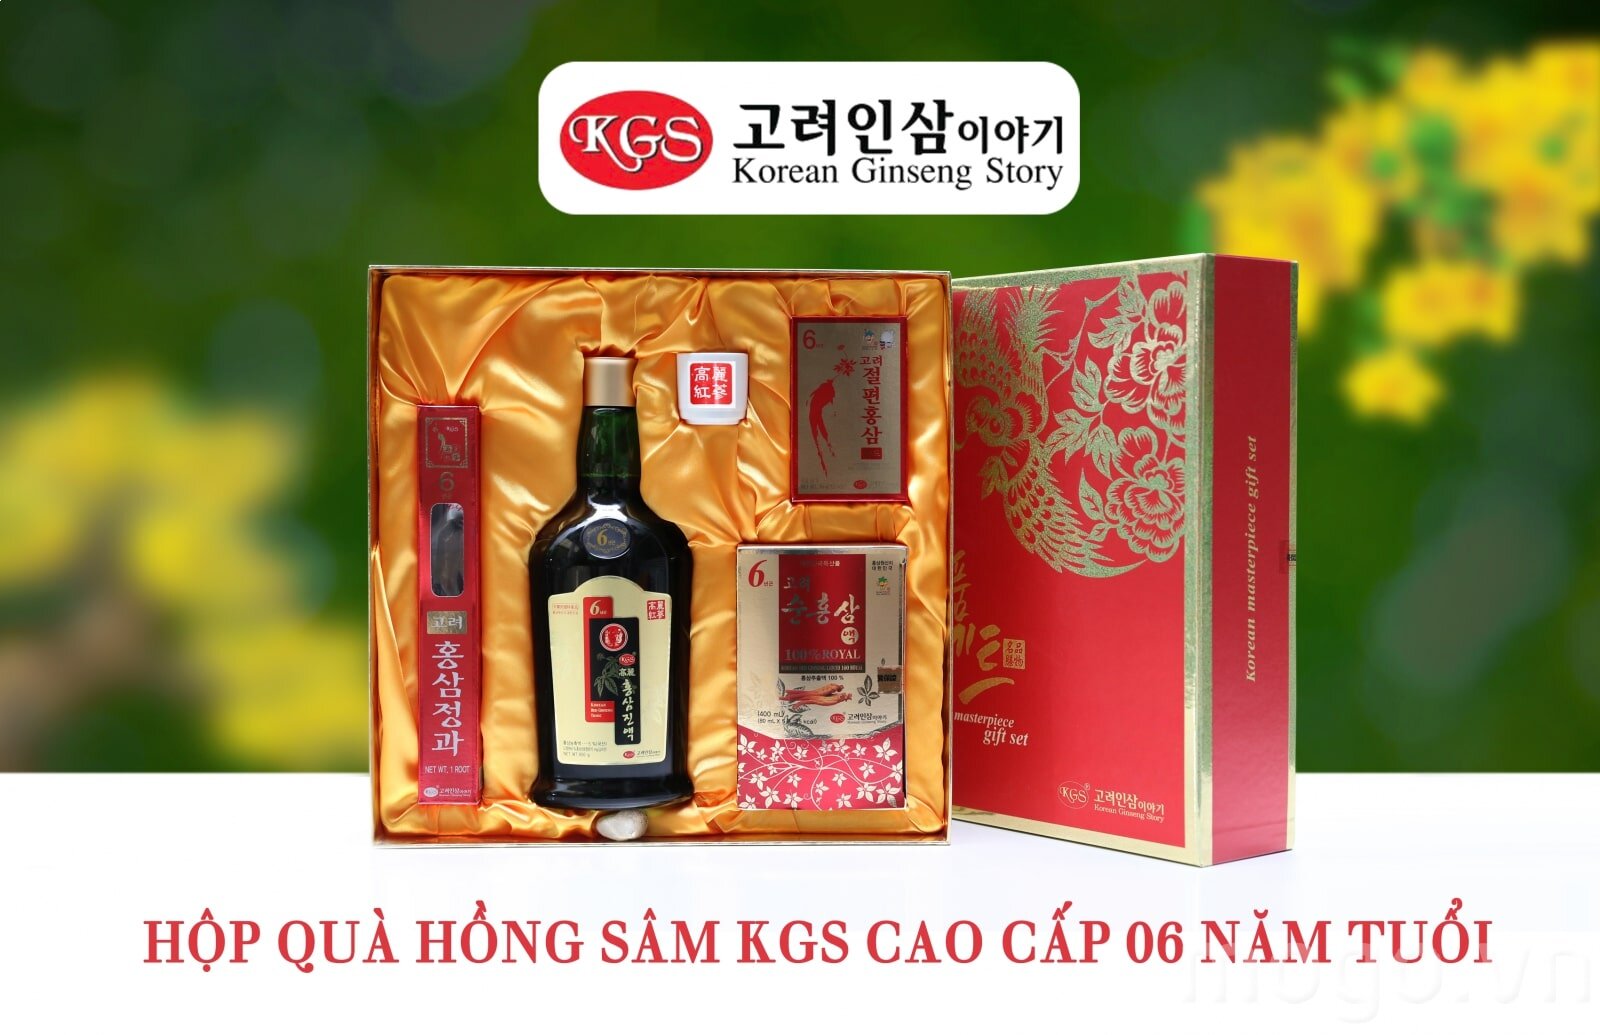 Sản phẩm hồng sâm Korean Ginseng Story là món quà sức khỏe tuyệt vời